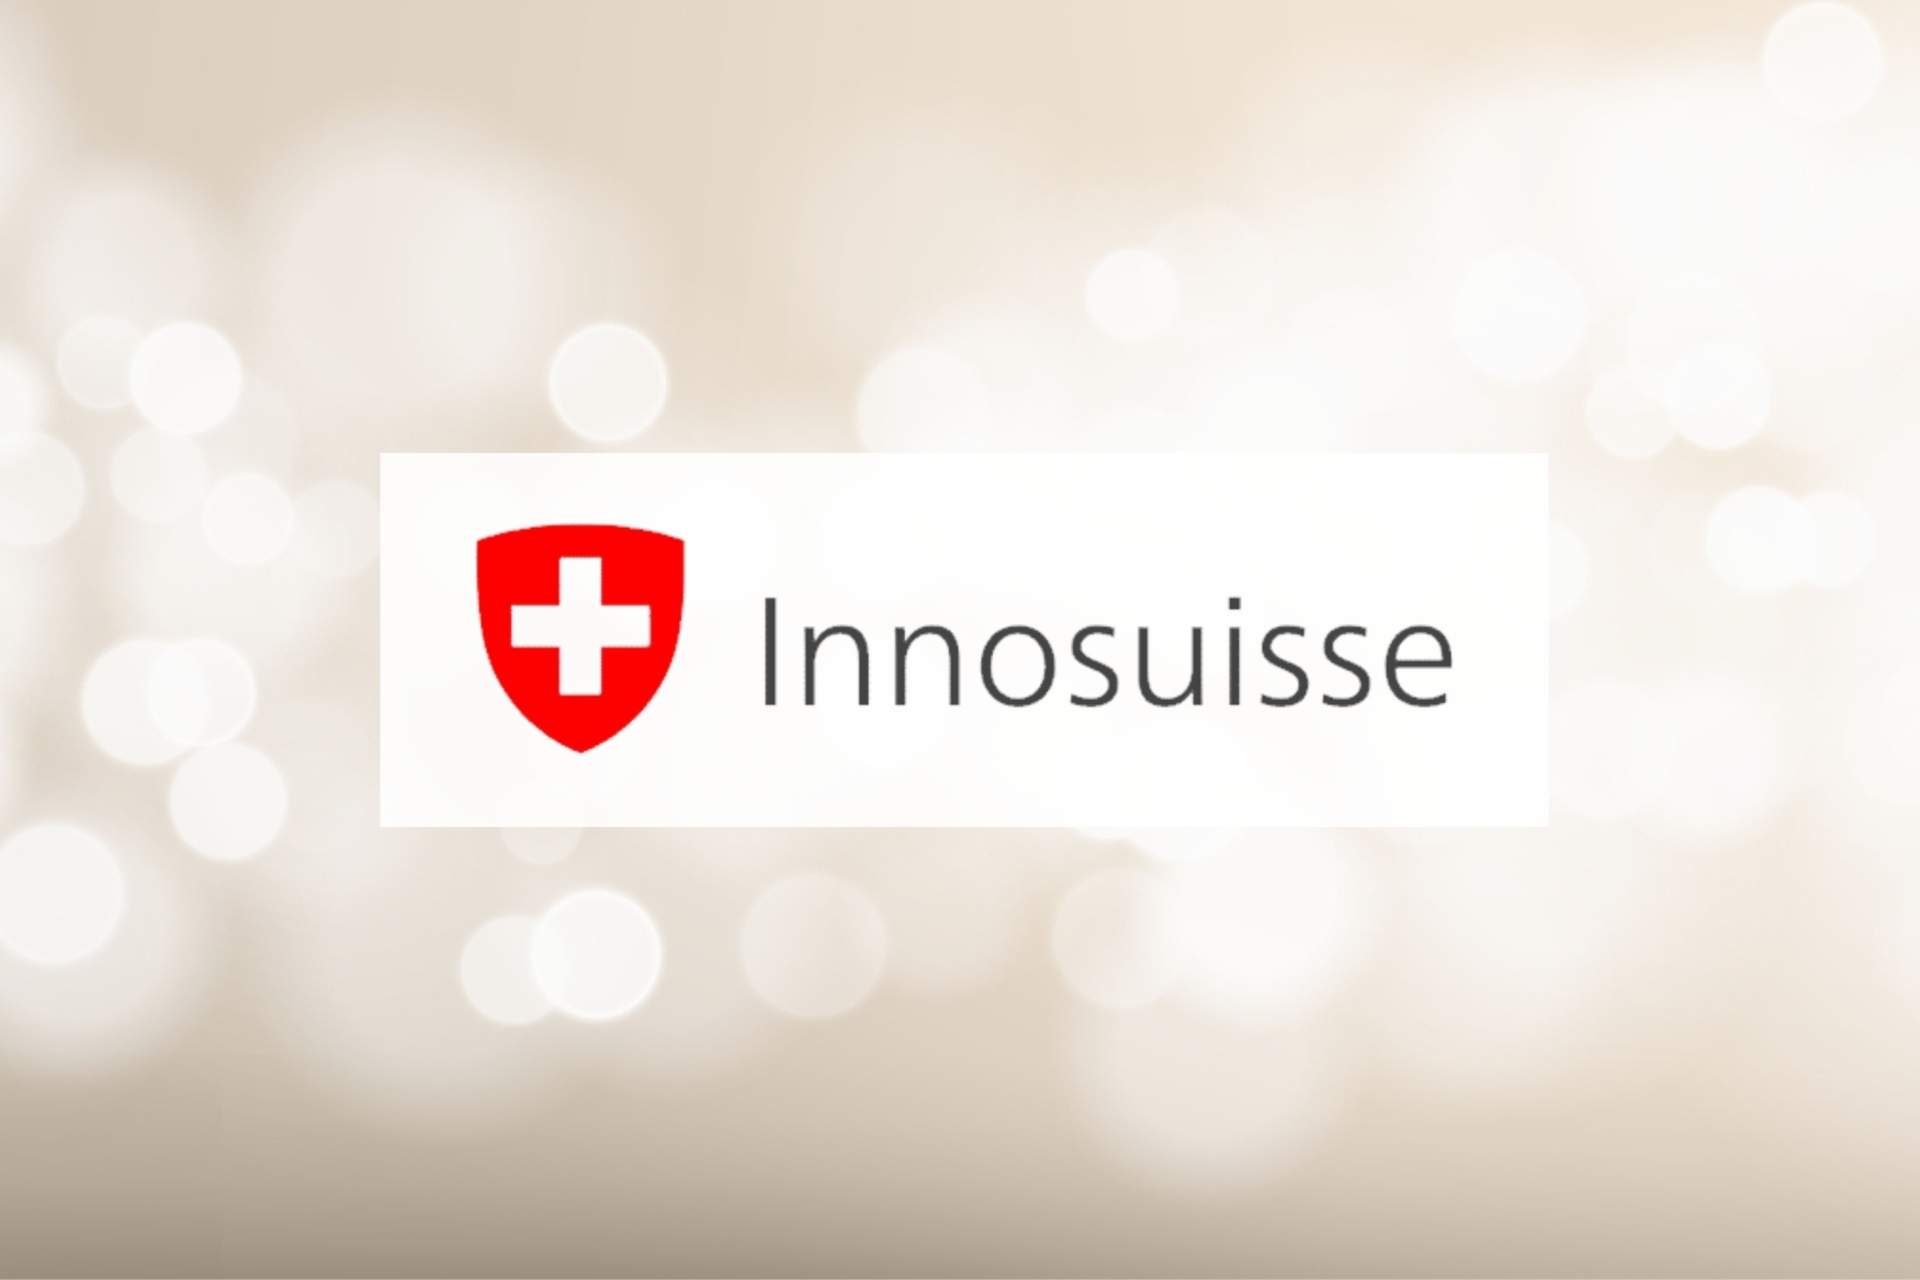 Innosuisse: Agence suisse pour la promotion de l'innovation